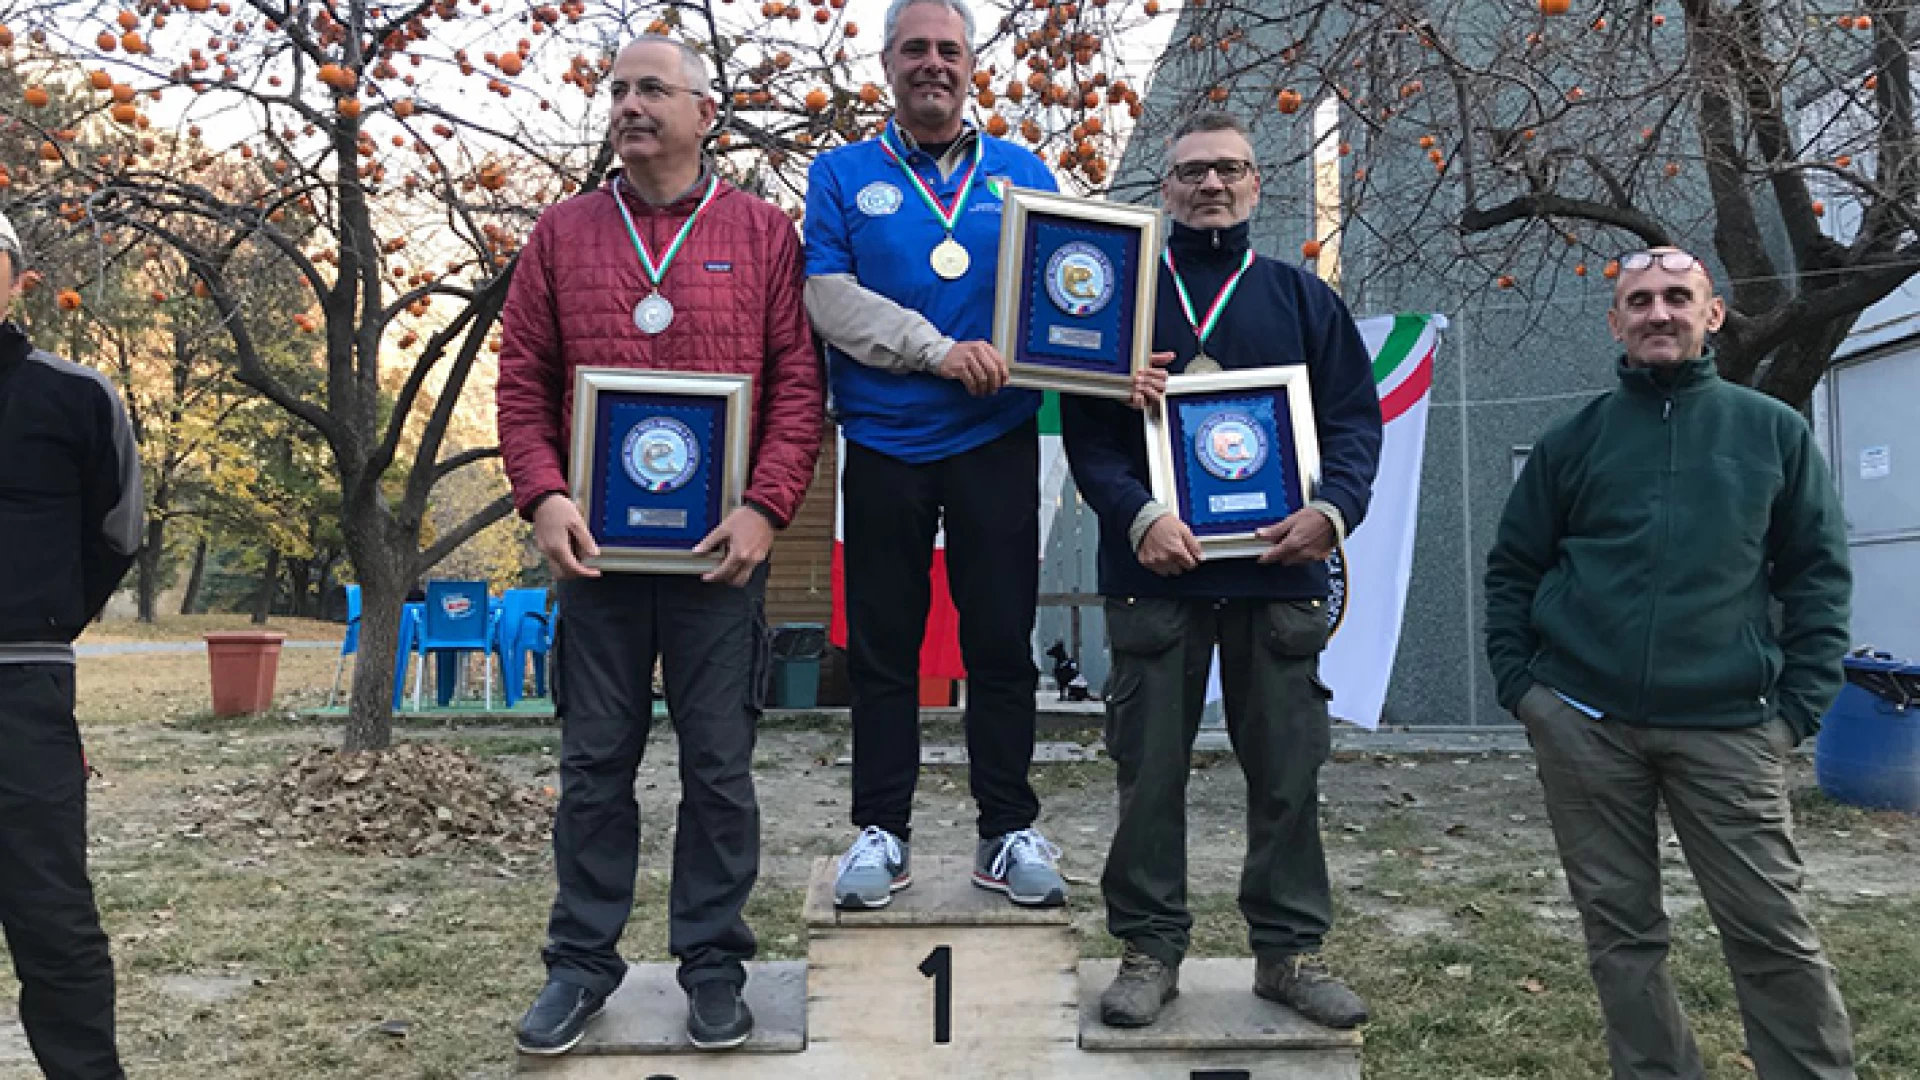 Pesca sportiva: Armando Di Giacomo trionfa in Valle d’Aosta. Per lui titolo italiano e accesso di diritto ai mondiali in Spagna.